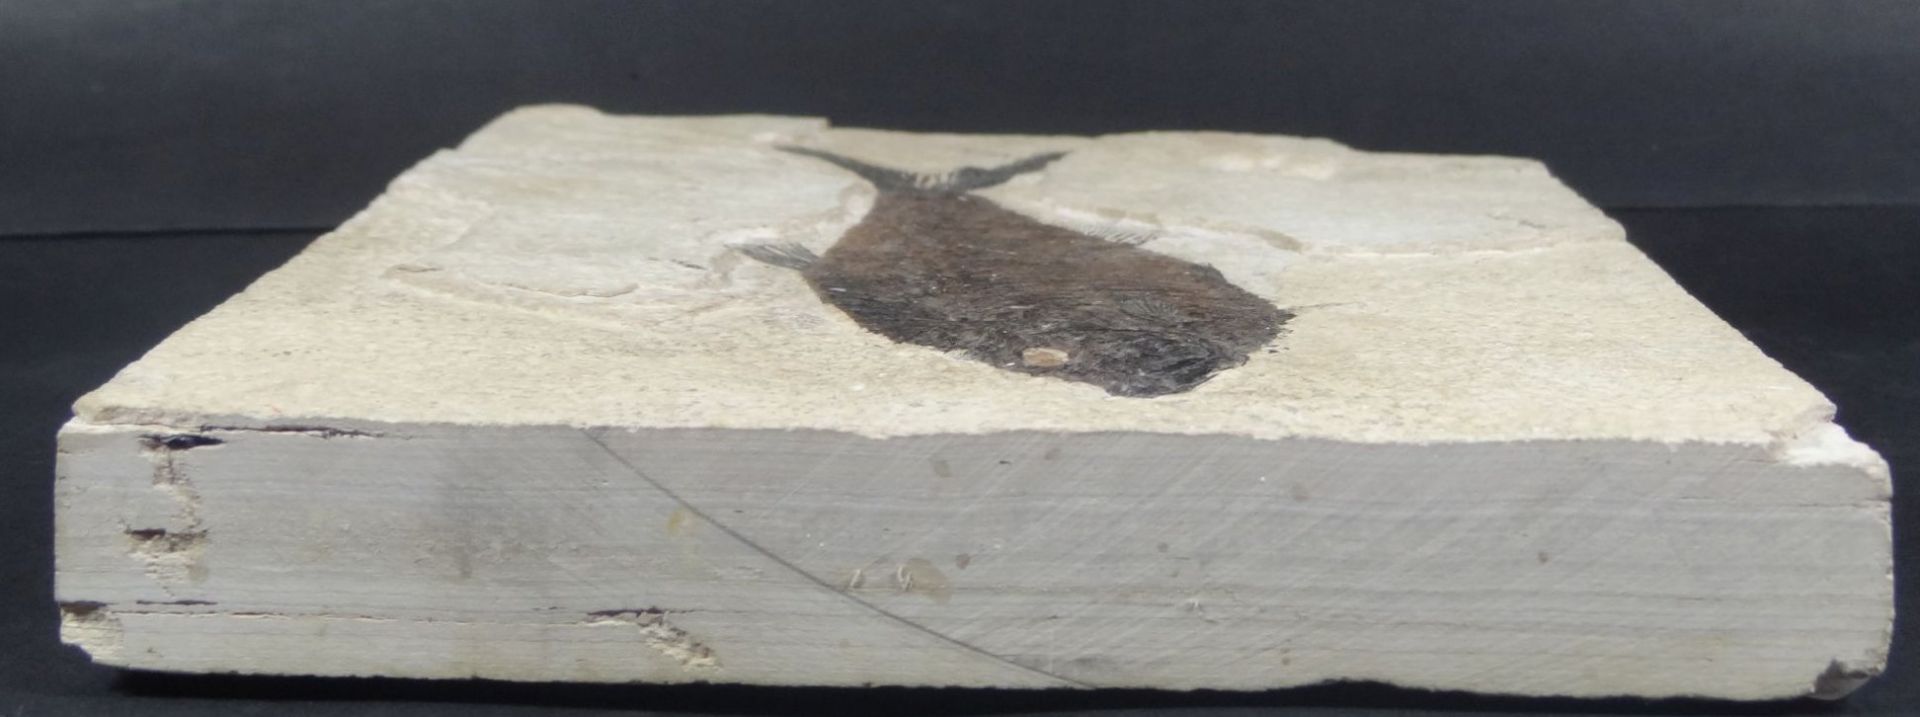 versteinerter Fisch in Steinplatte, 16,5x21,5 cm- - -22.61 % buyer's premium on the hammer - Bild 2 aus 4